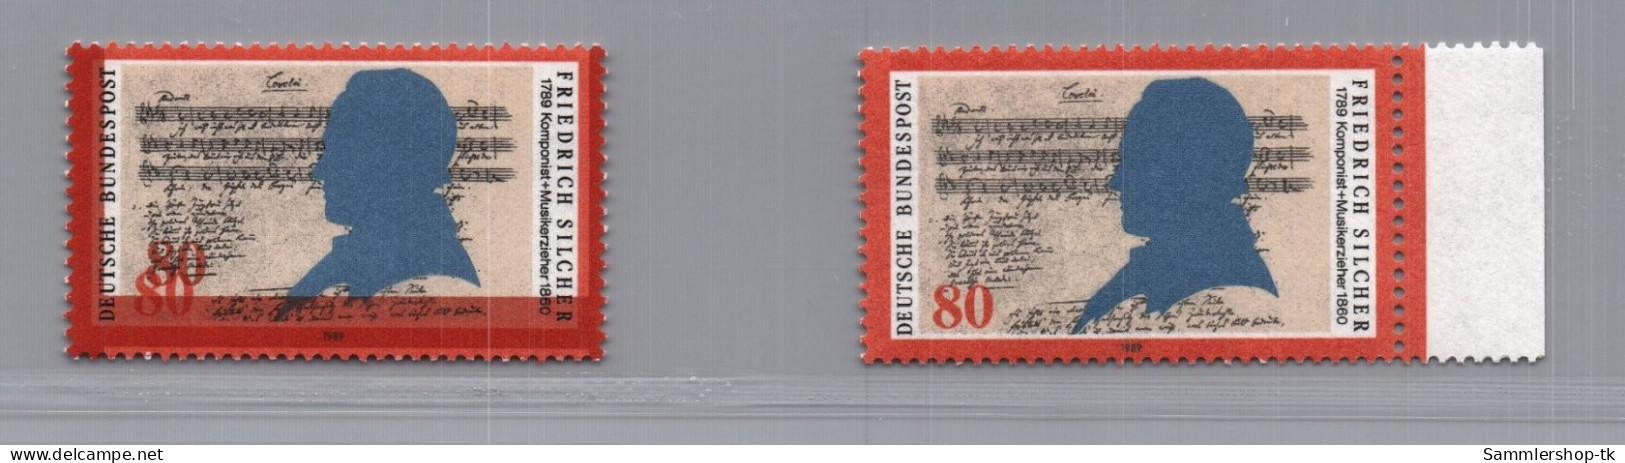 Bund Michel Nummer 1425 DD Doppeldruck (links) Mit Vergleichsmarke - Abarten Und Kuriositäten